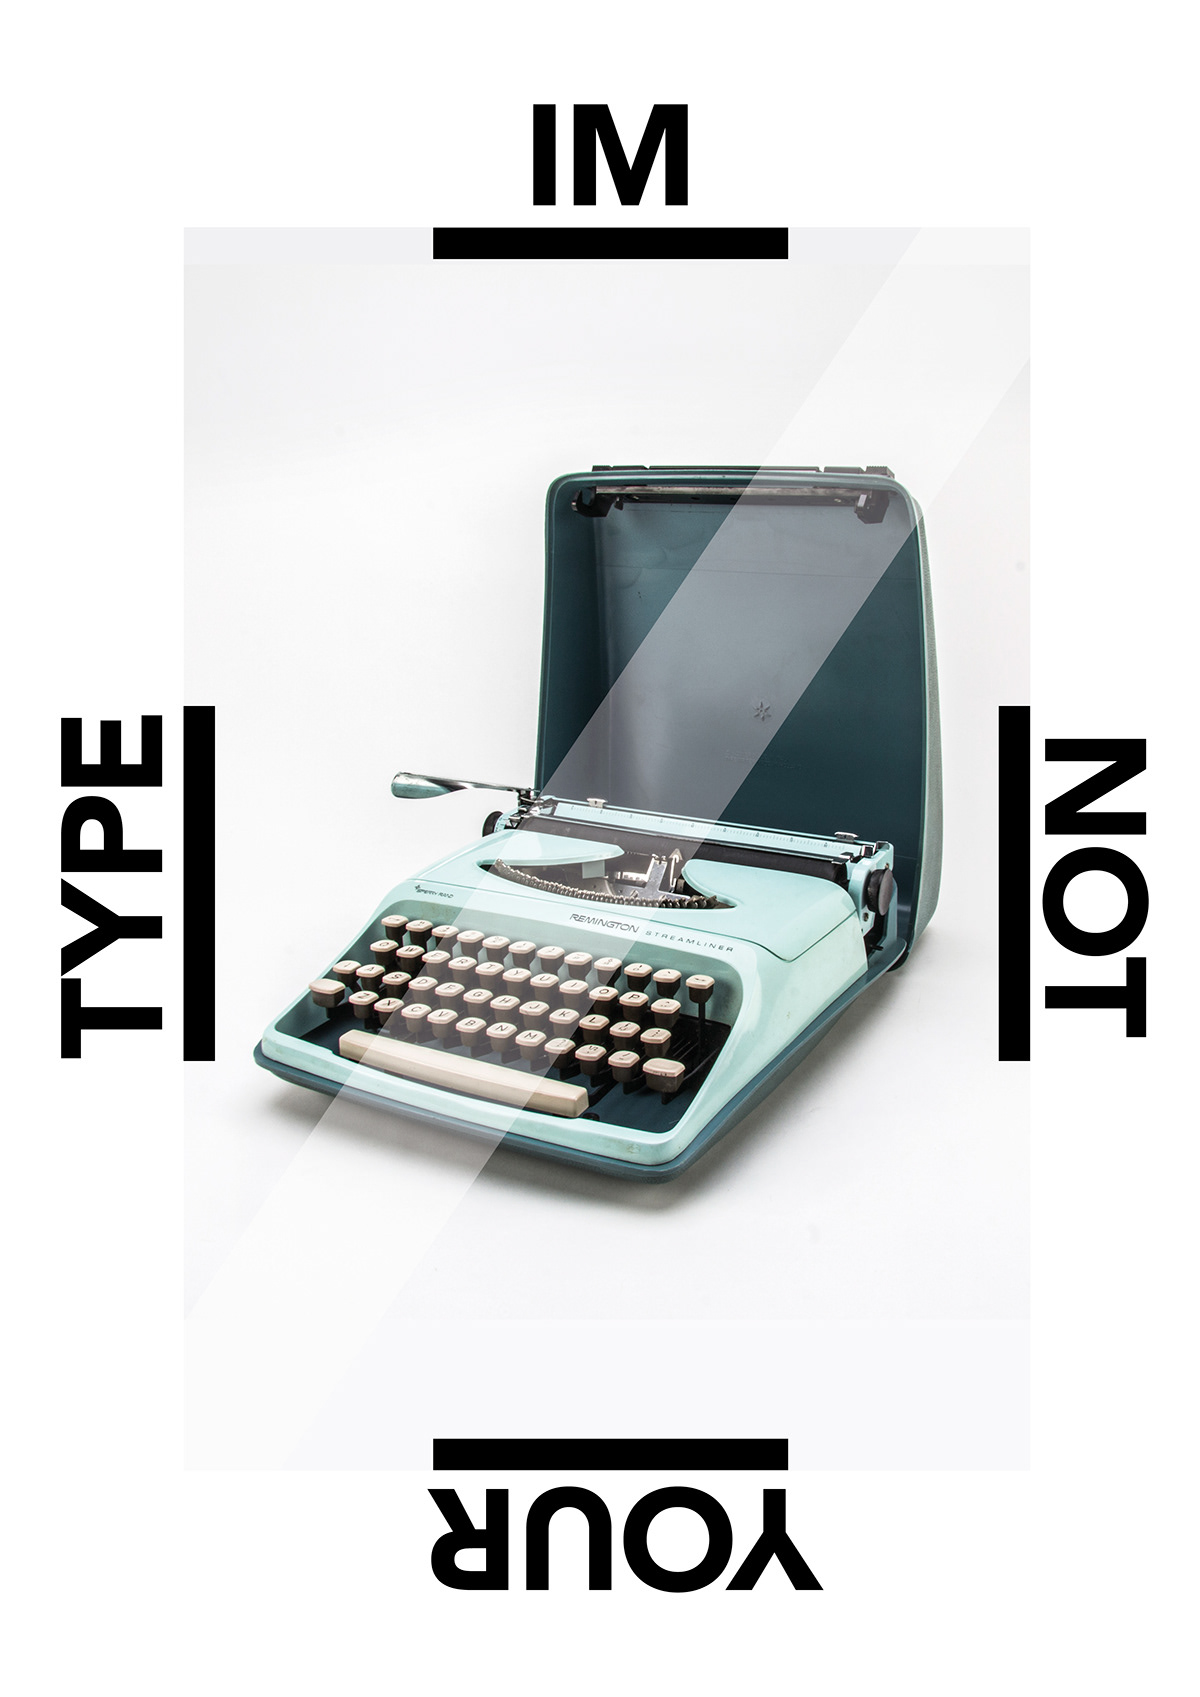 typo type typewriter design poster